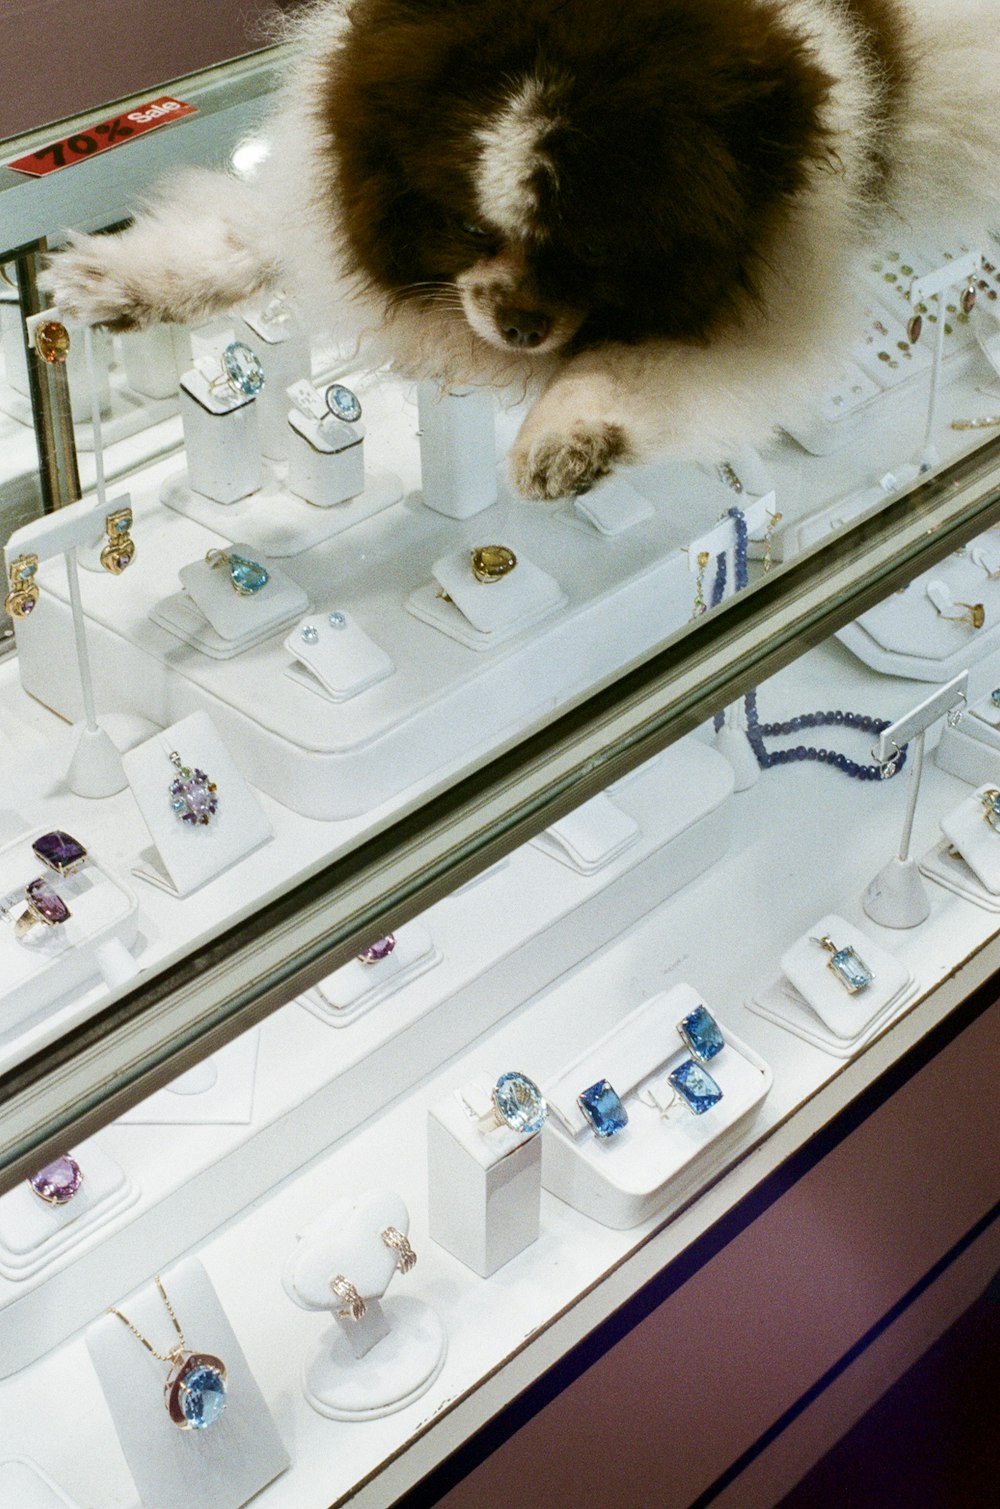 Un cane seduto su una vetrina in una gioielleria